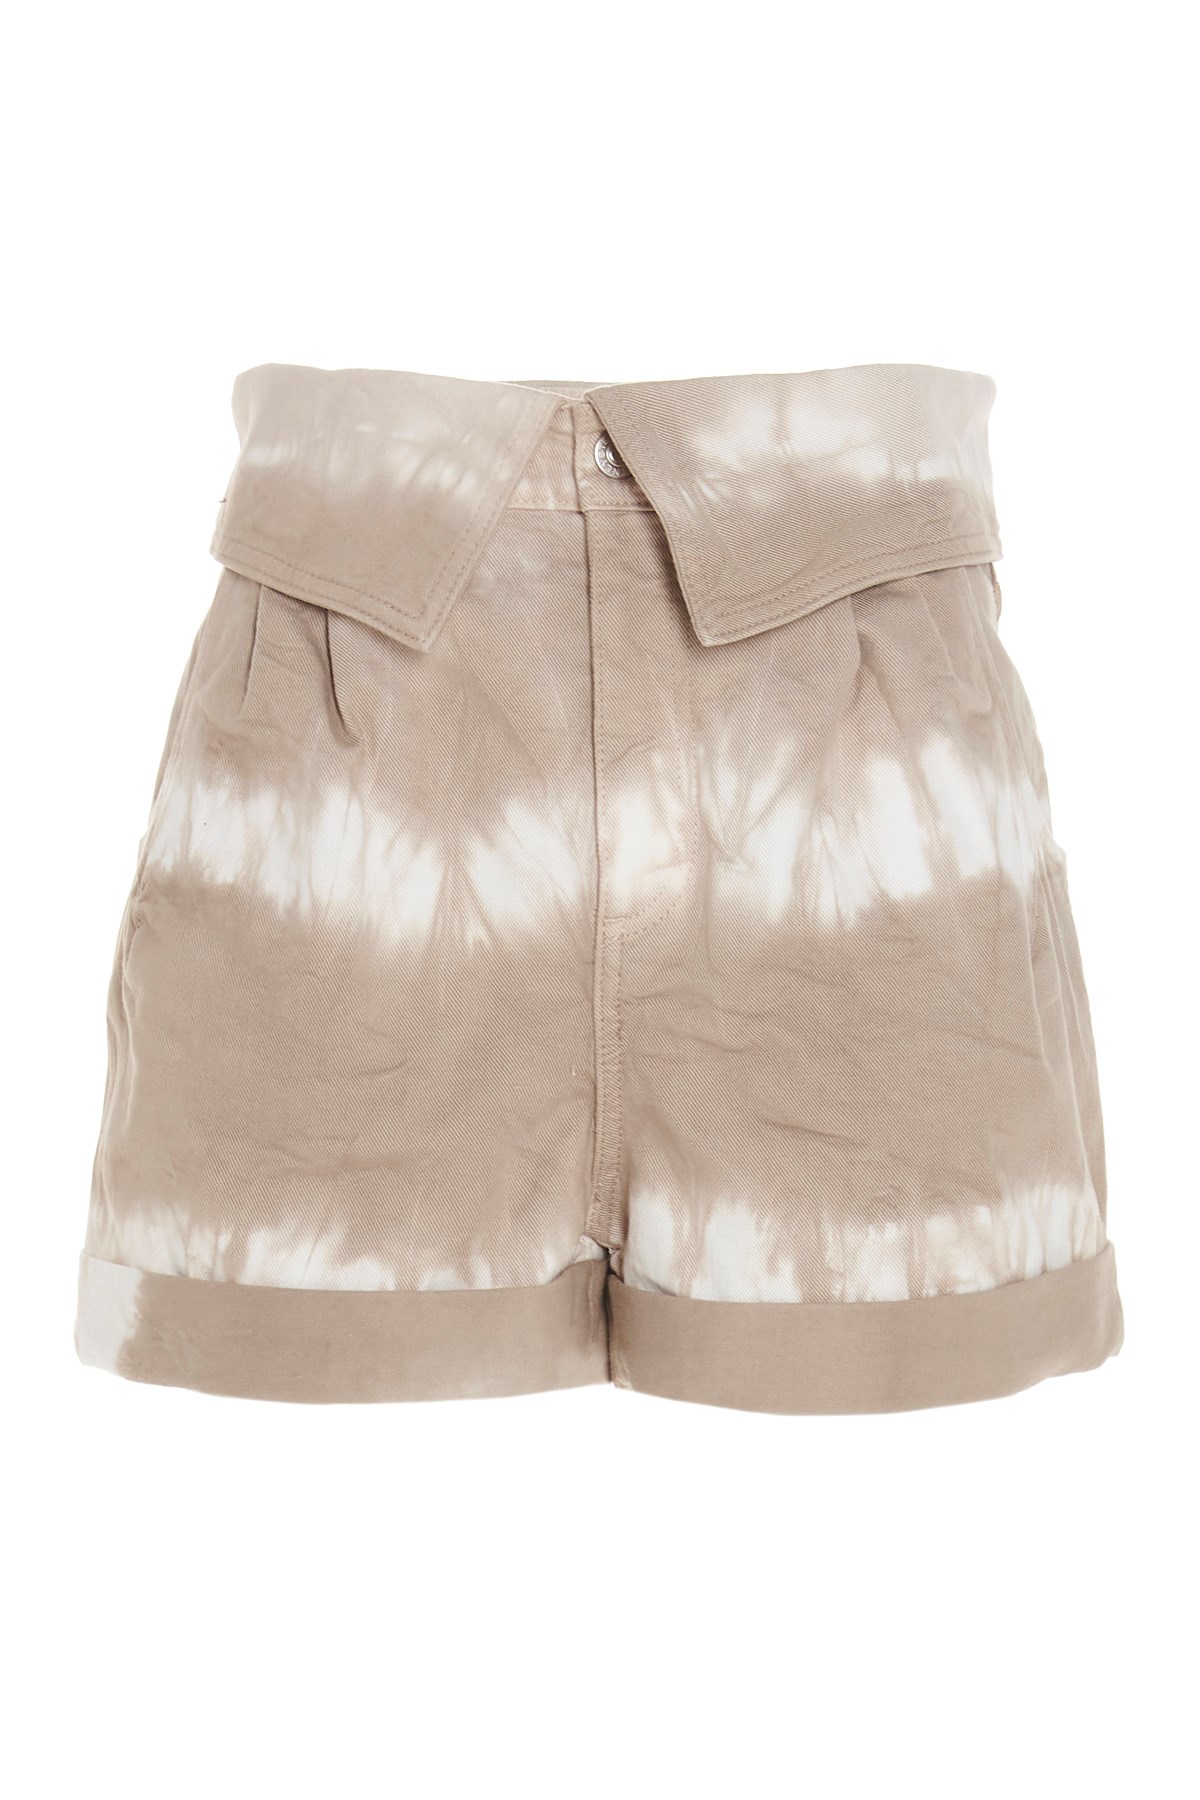 STELLA MCCARTNEY 'Bamboo Safari’ Shorts